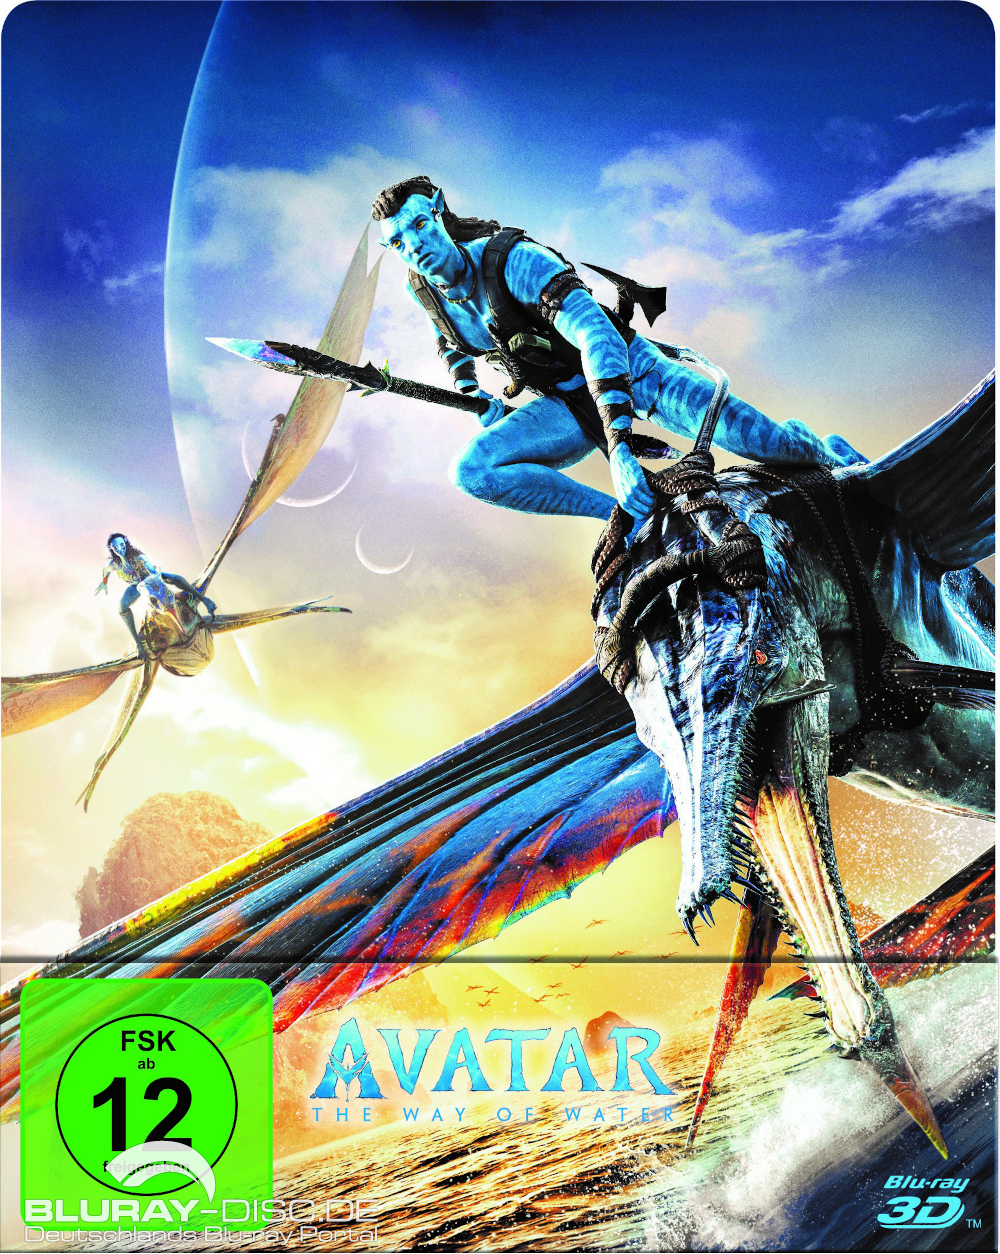 Avatar-The-Way-of-Water-3D-Steelbook-Galerie.jpg